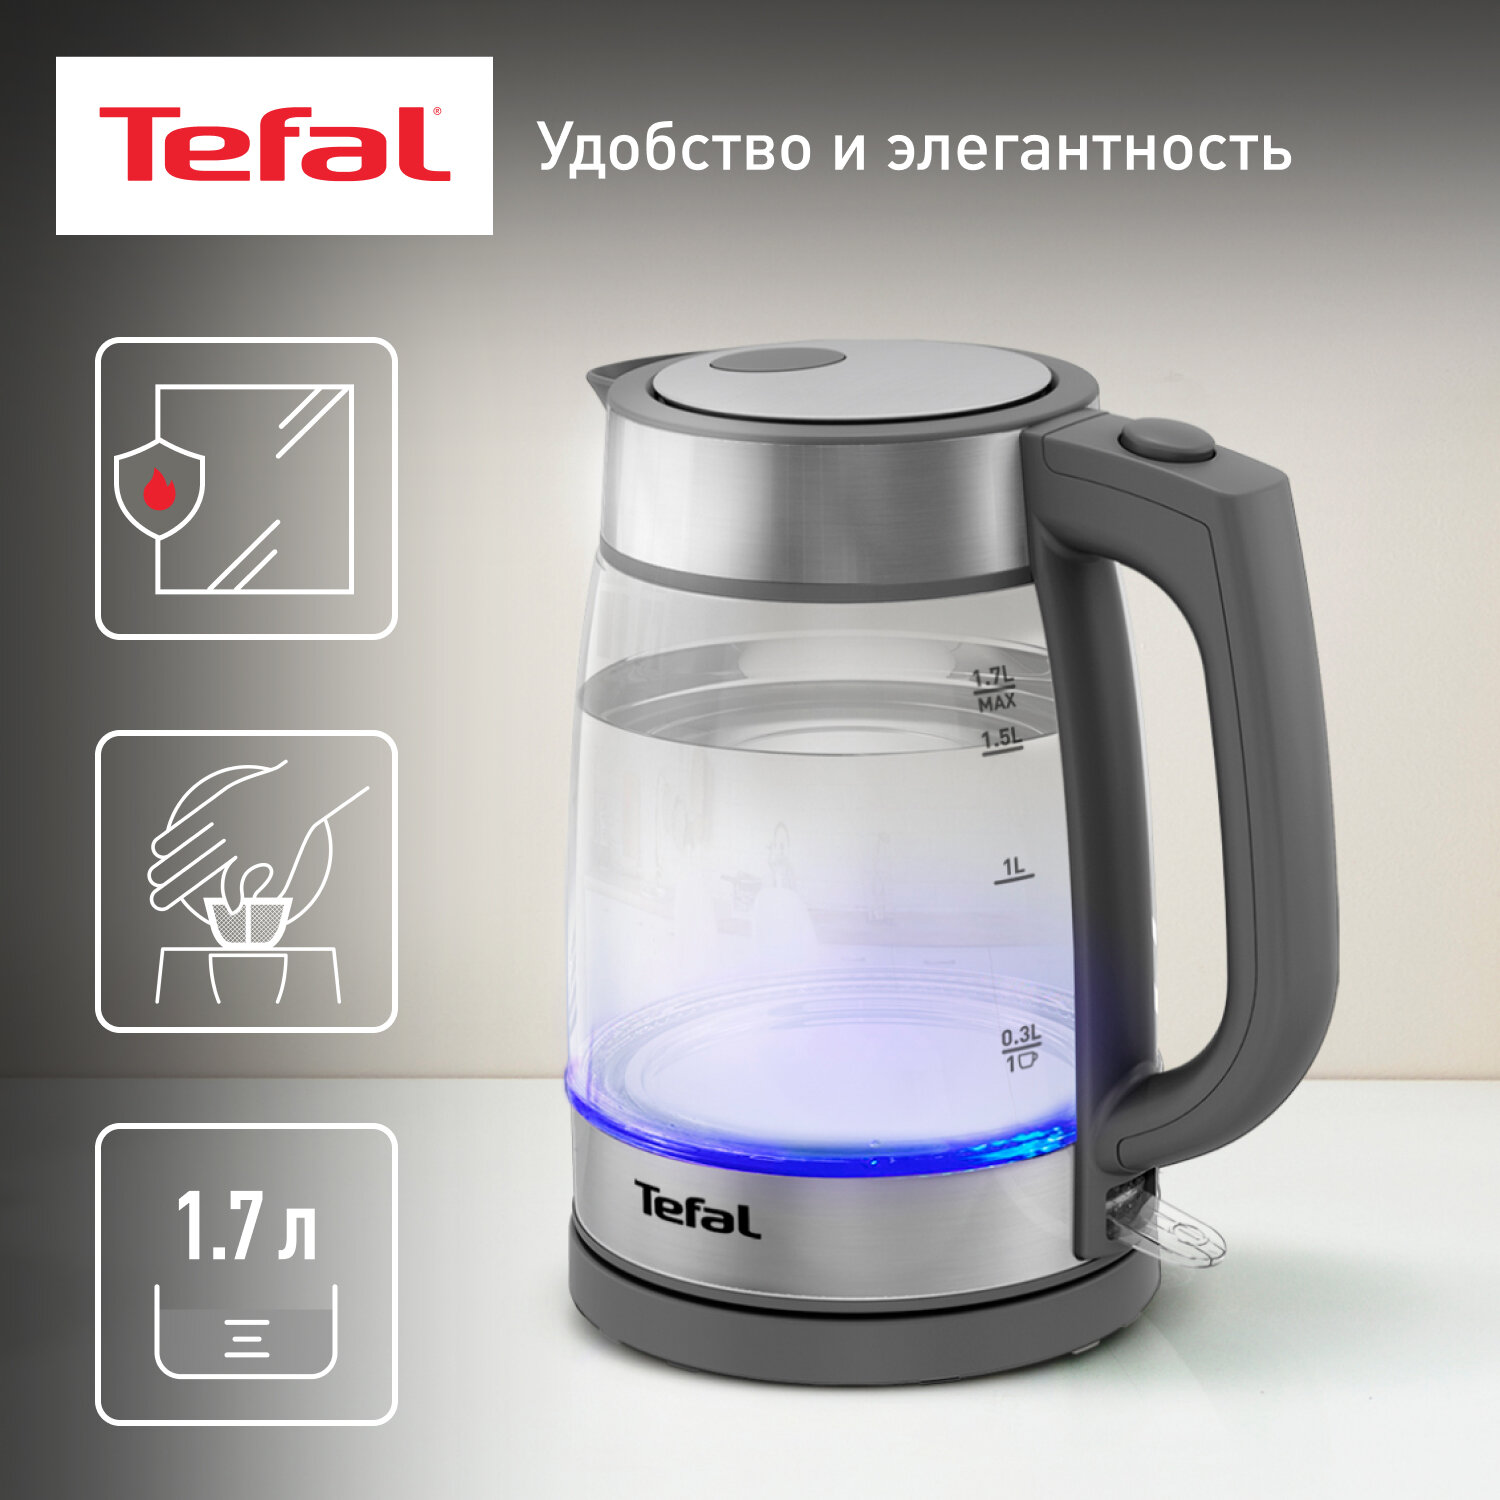 Электрический чайник Tefal KI740B30 1.7 л, 2200 Вт с подсветкой и автоотключением